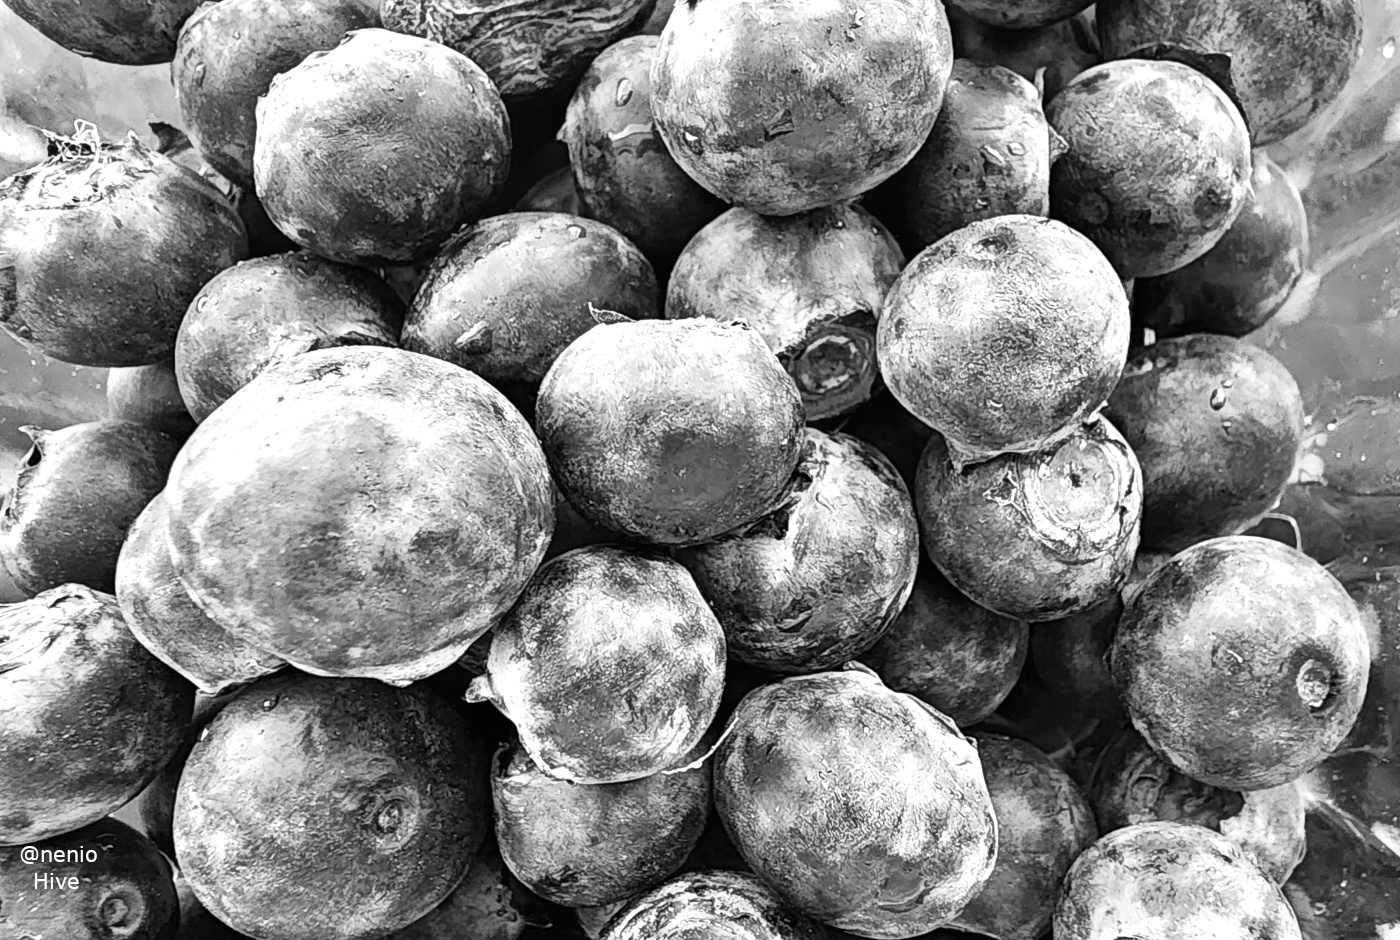 blueberries-001-bw.jpg